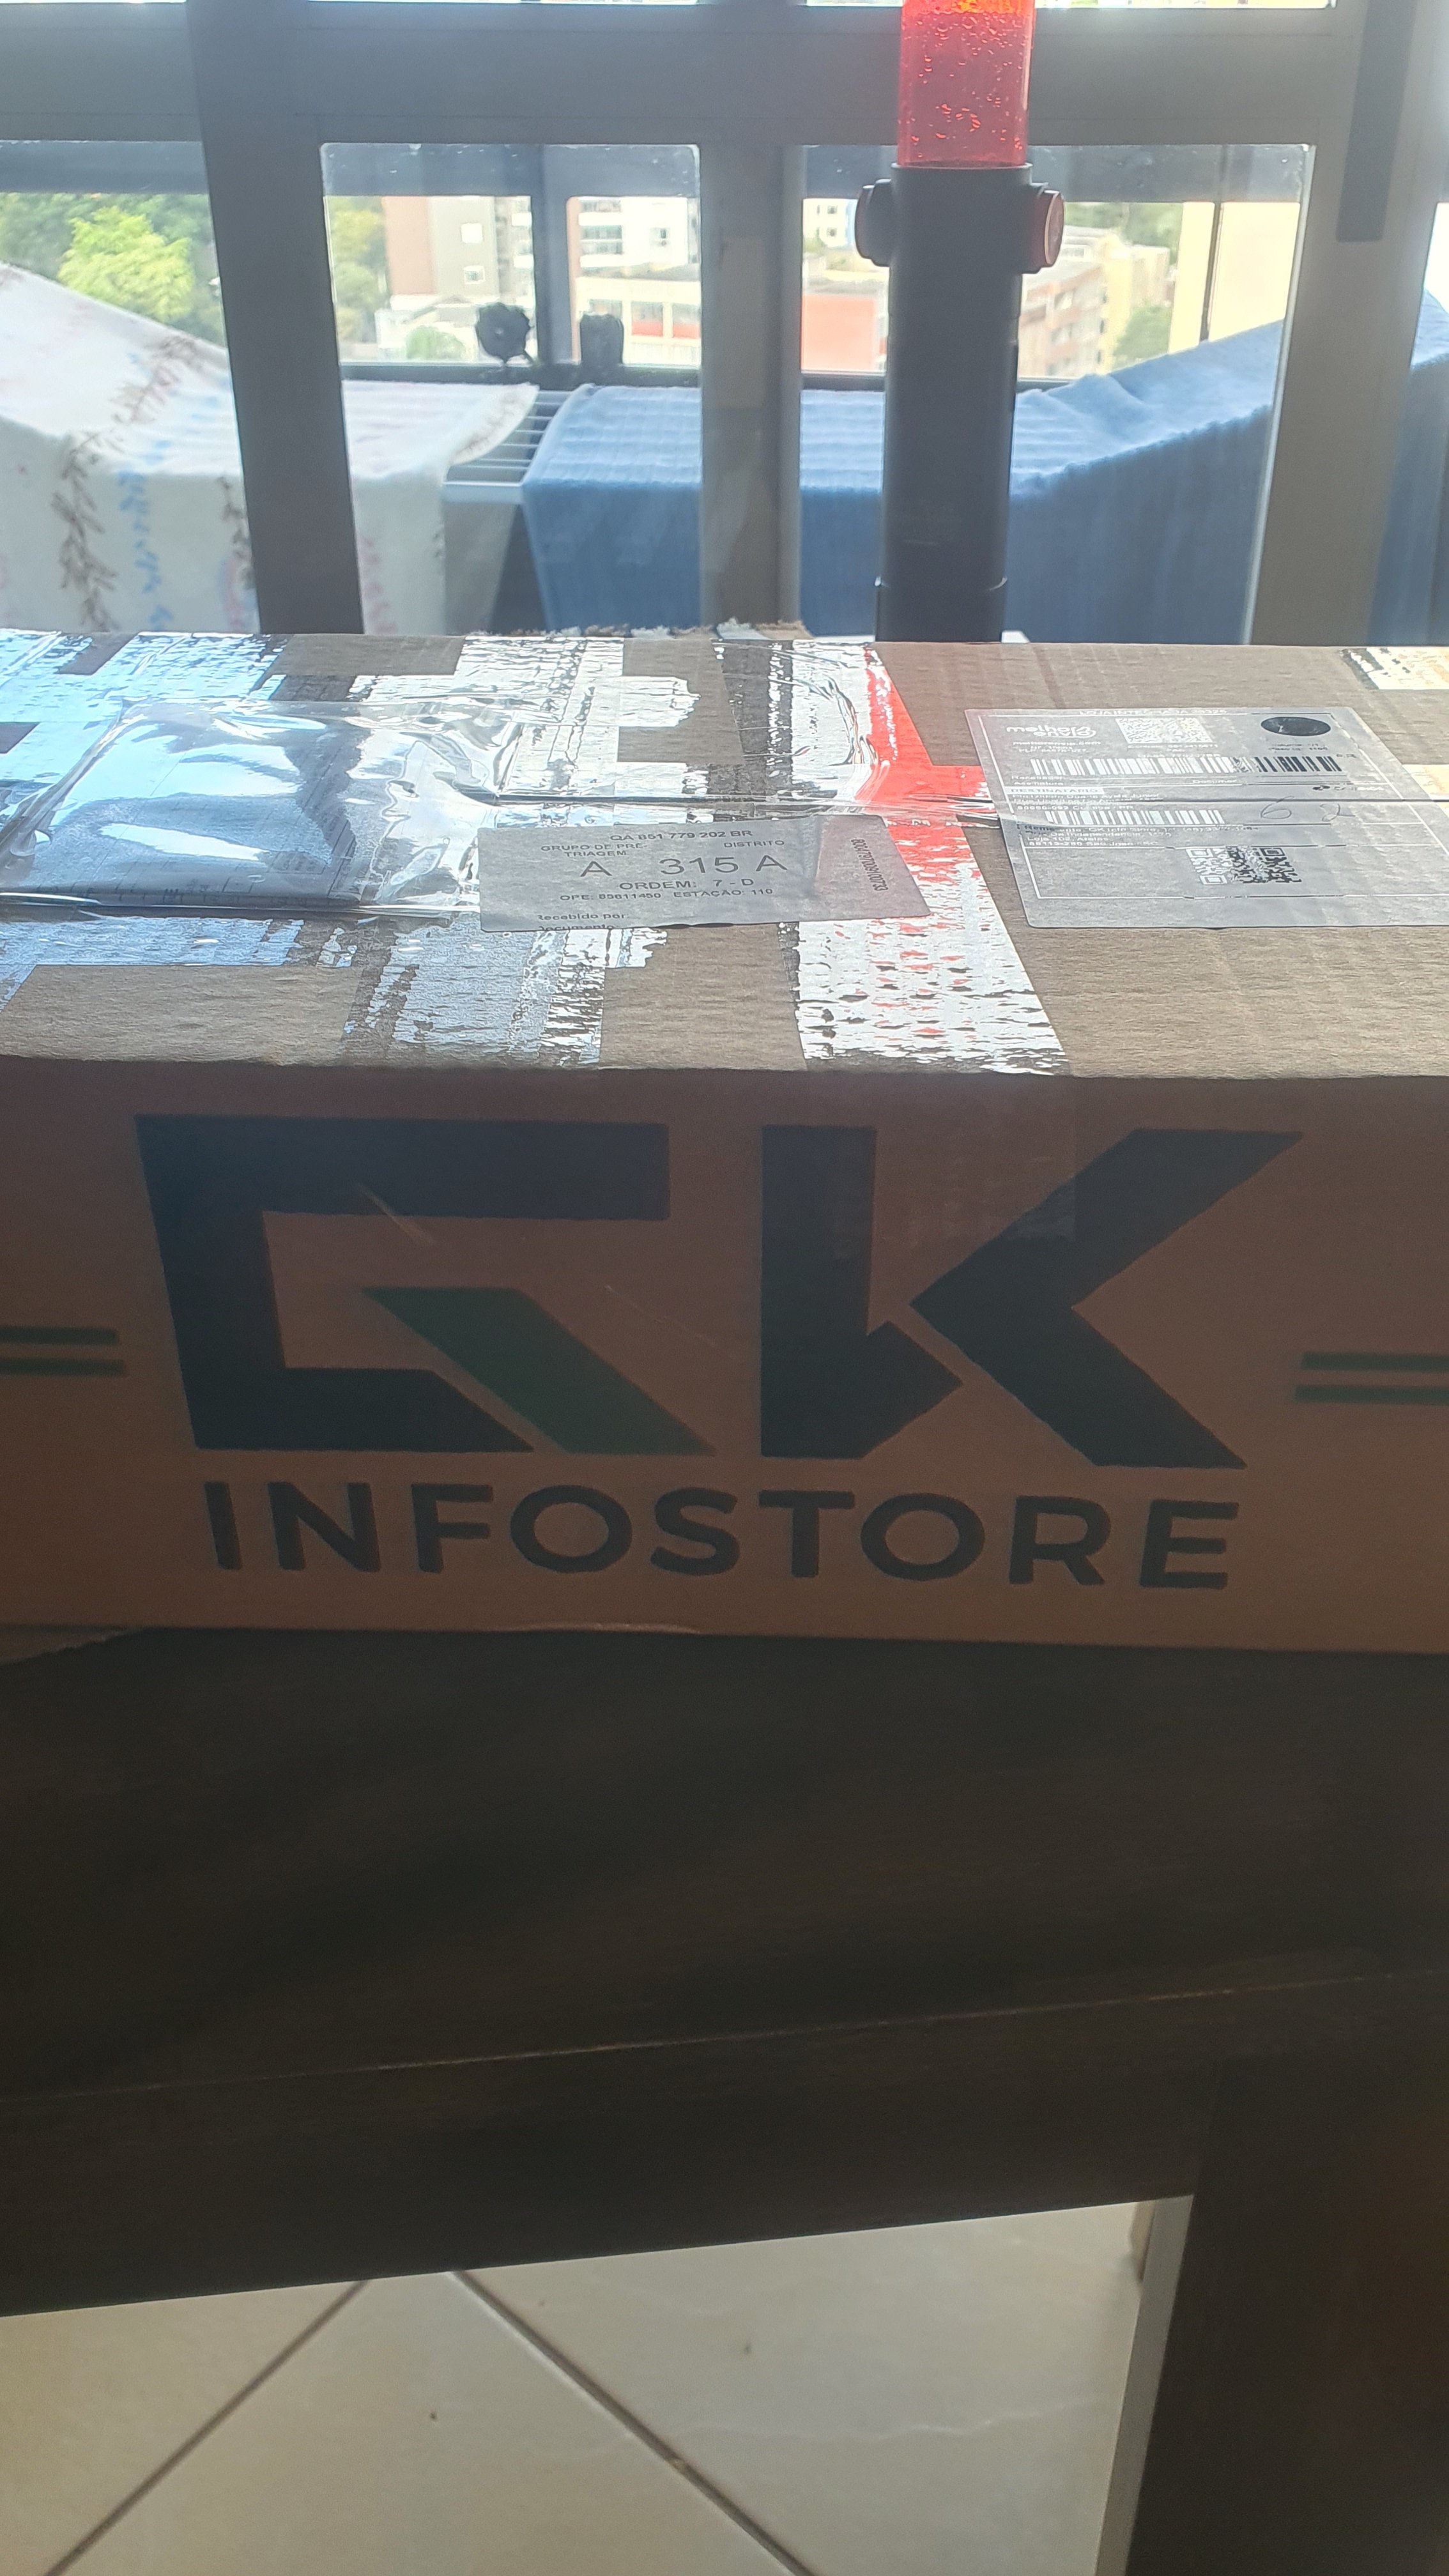 GK InfoStore on X: Antes de 2023 ninguém conhecia a GK…   / X